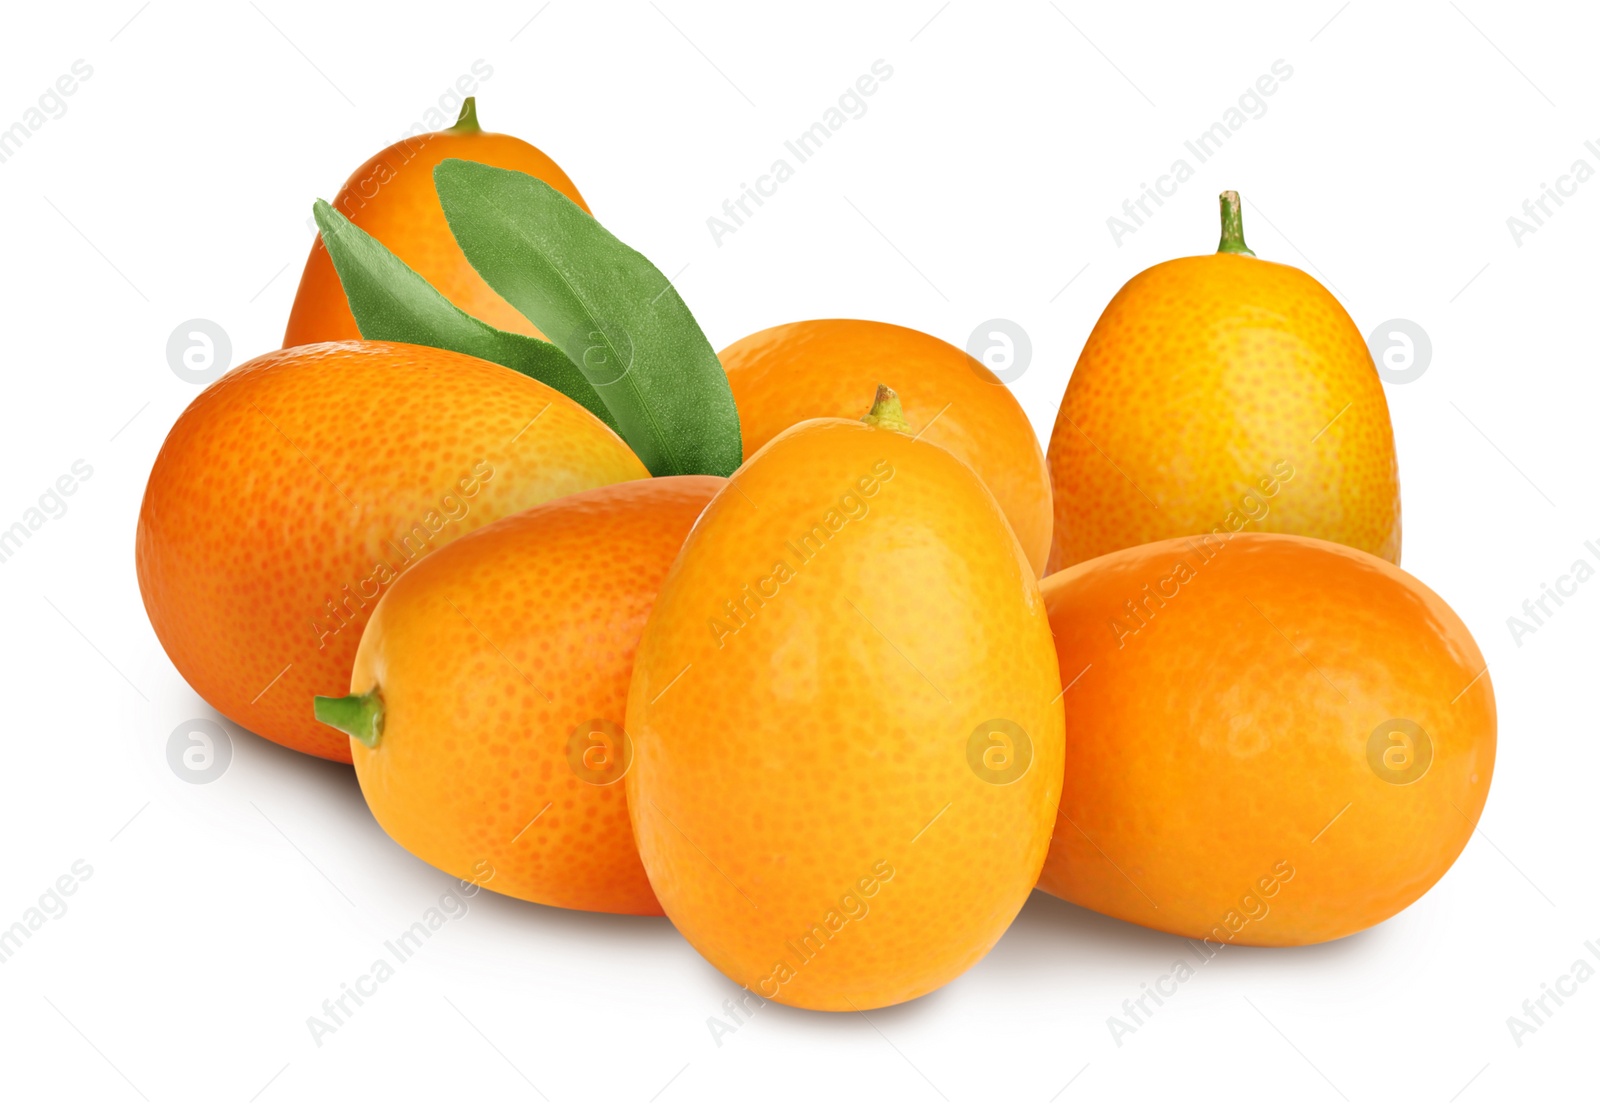 Image of Fresh ripe kumquat fruits on white background